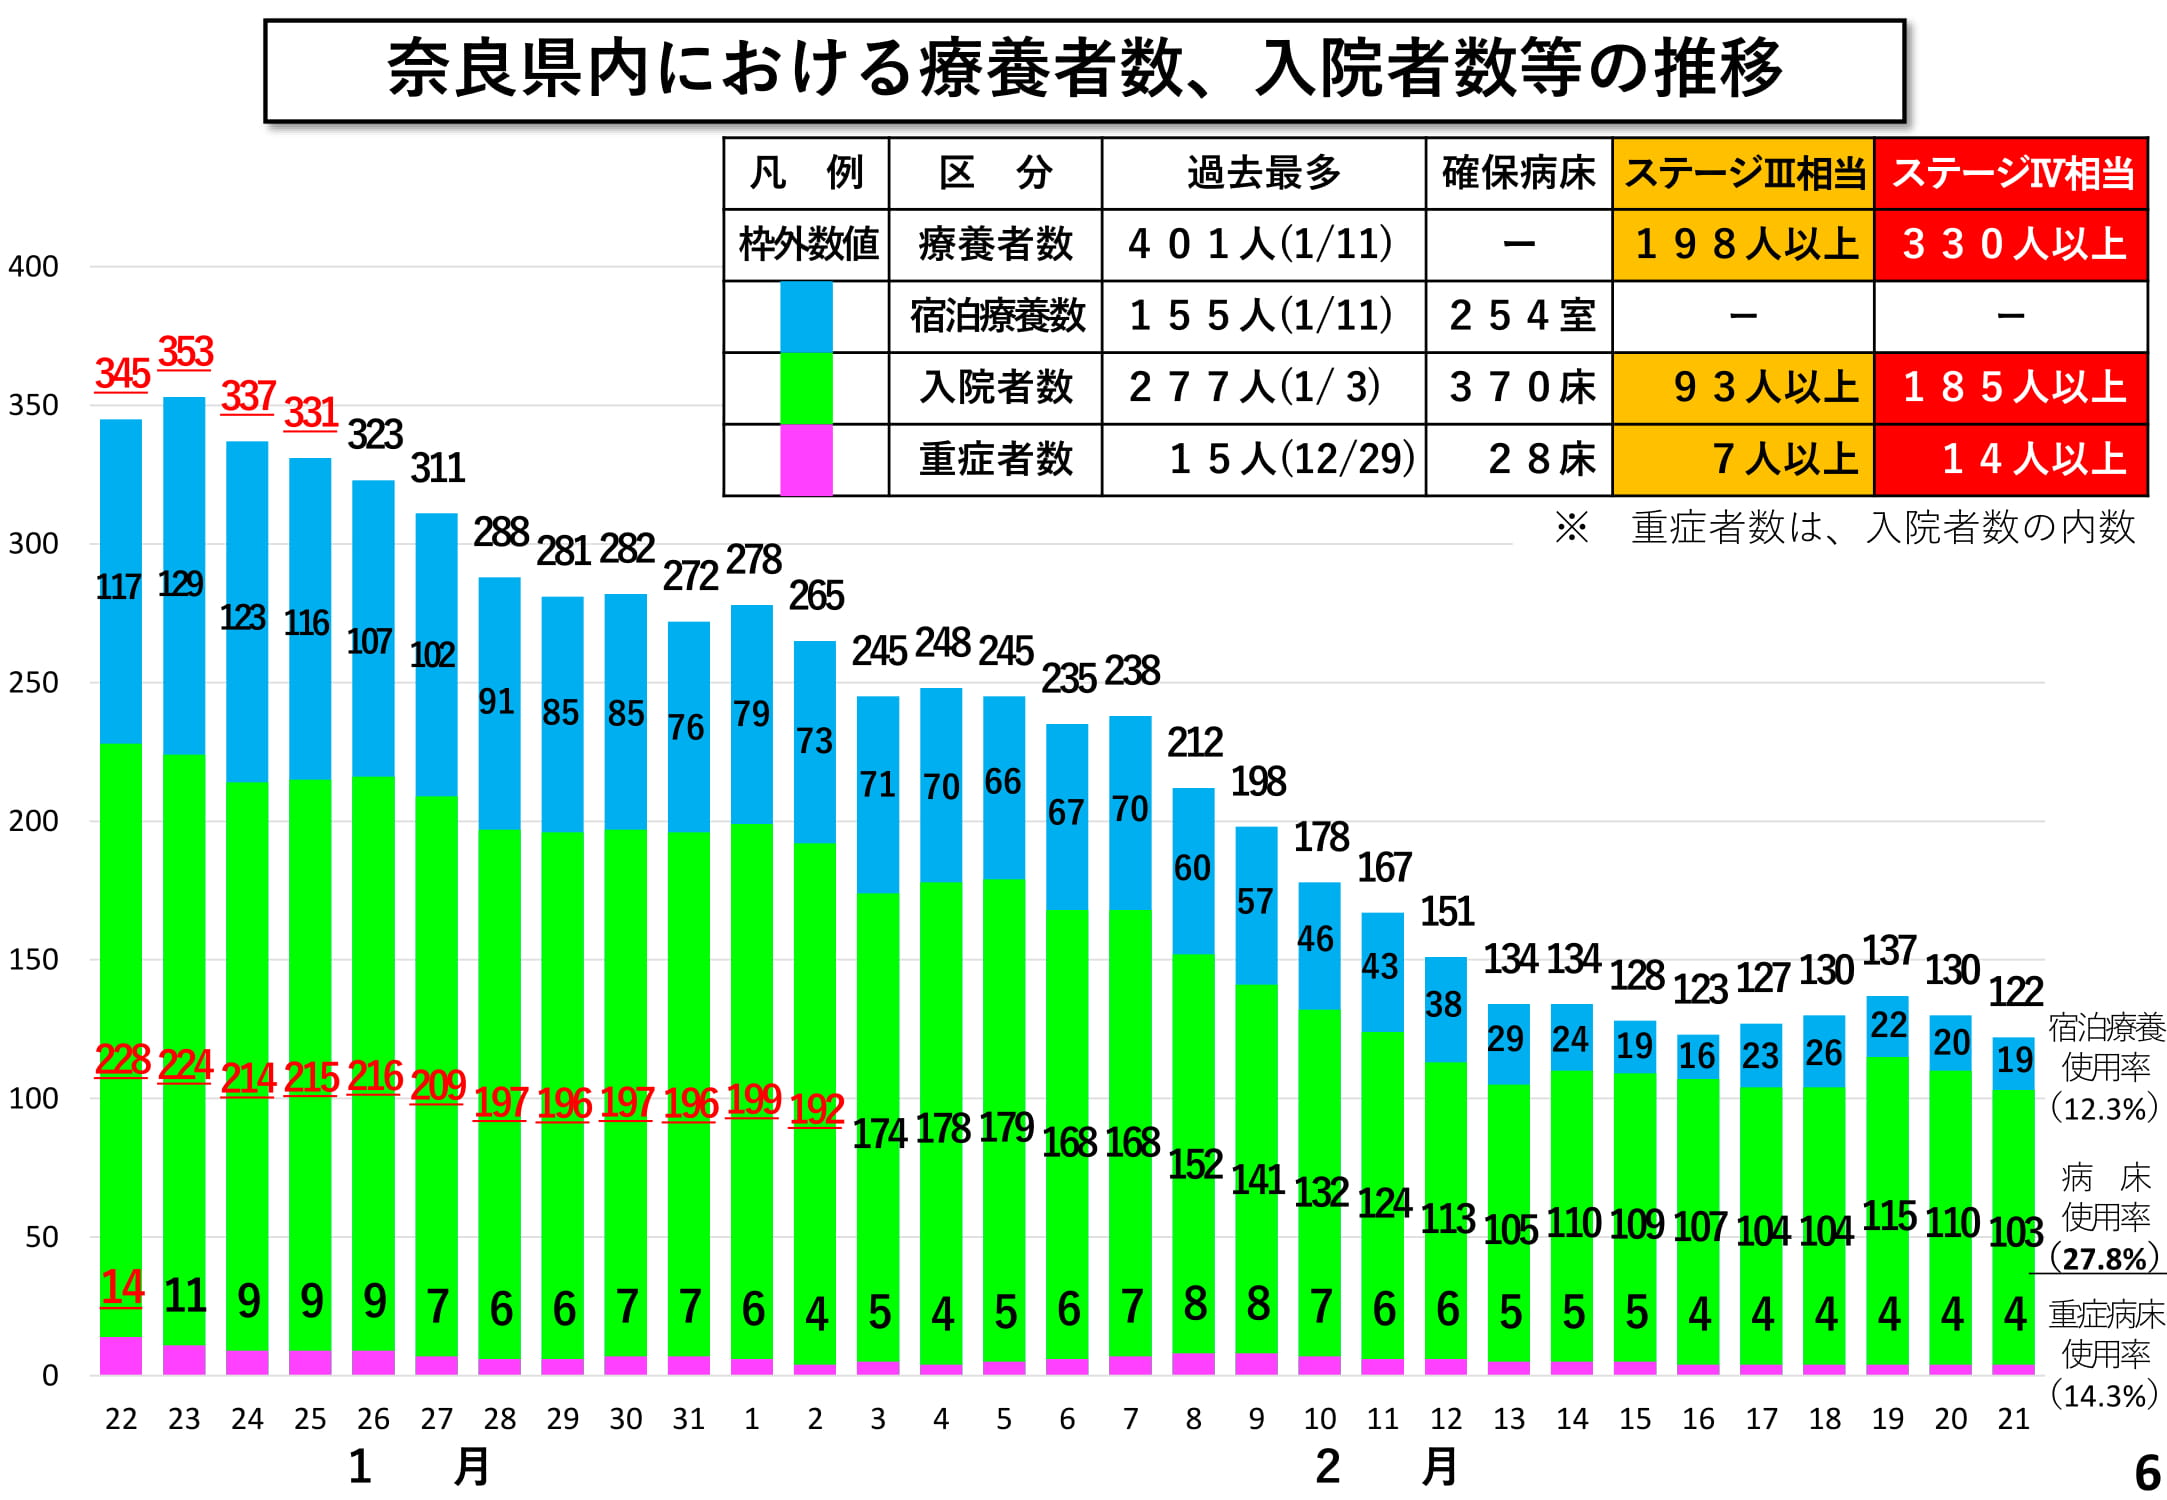 奈良県内における療養者数、入院者数等の推移